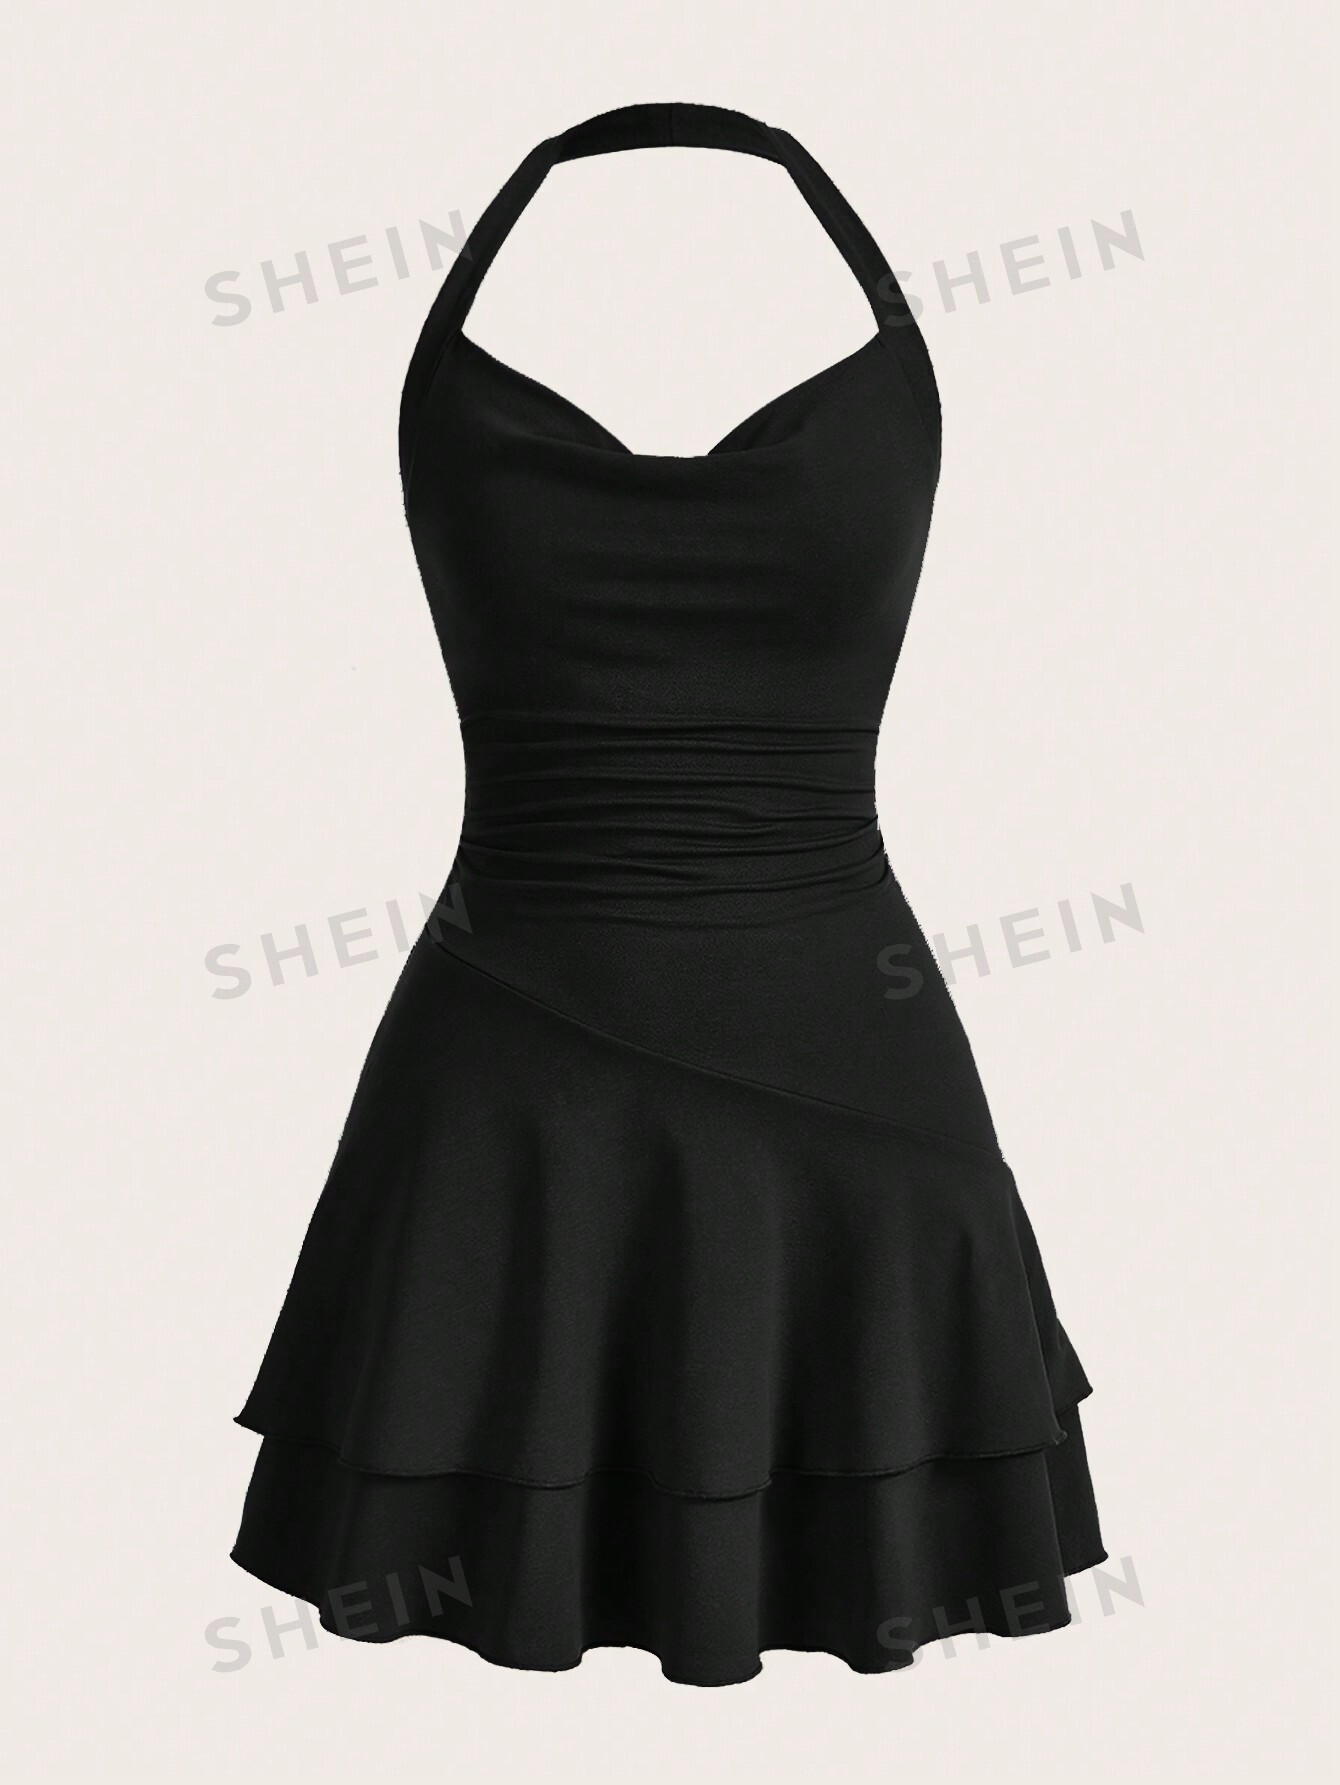 SHEIN MOD однотонное женское платье с бретелькой на шее и многослойным подолом, черный платье мини с бретелькой на шее asos luxe черный